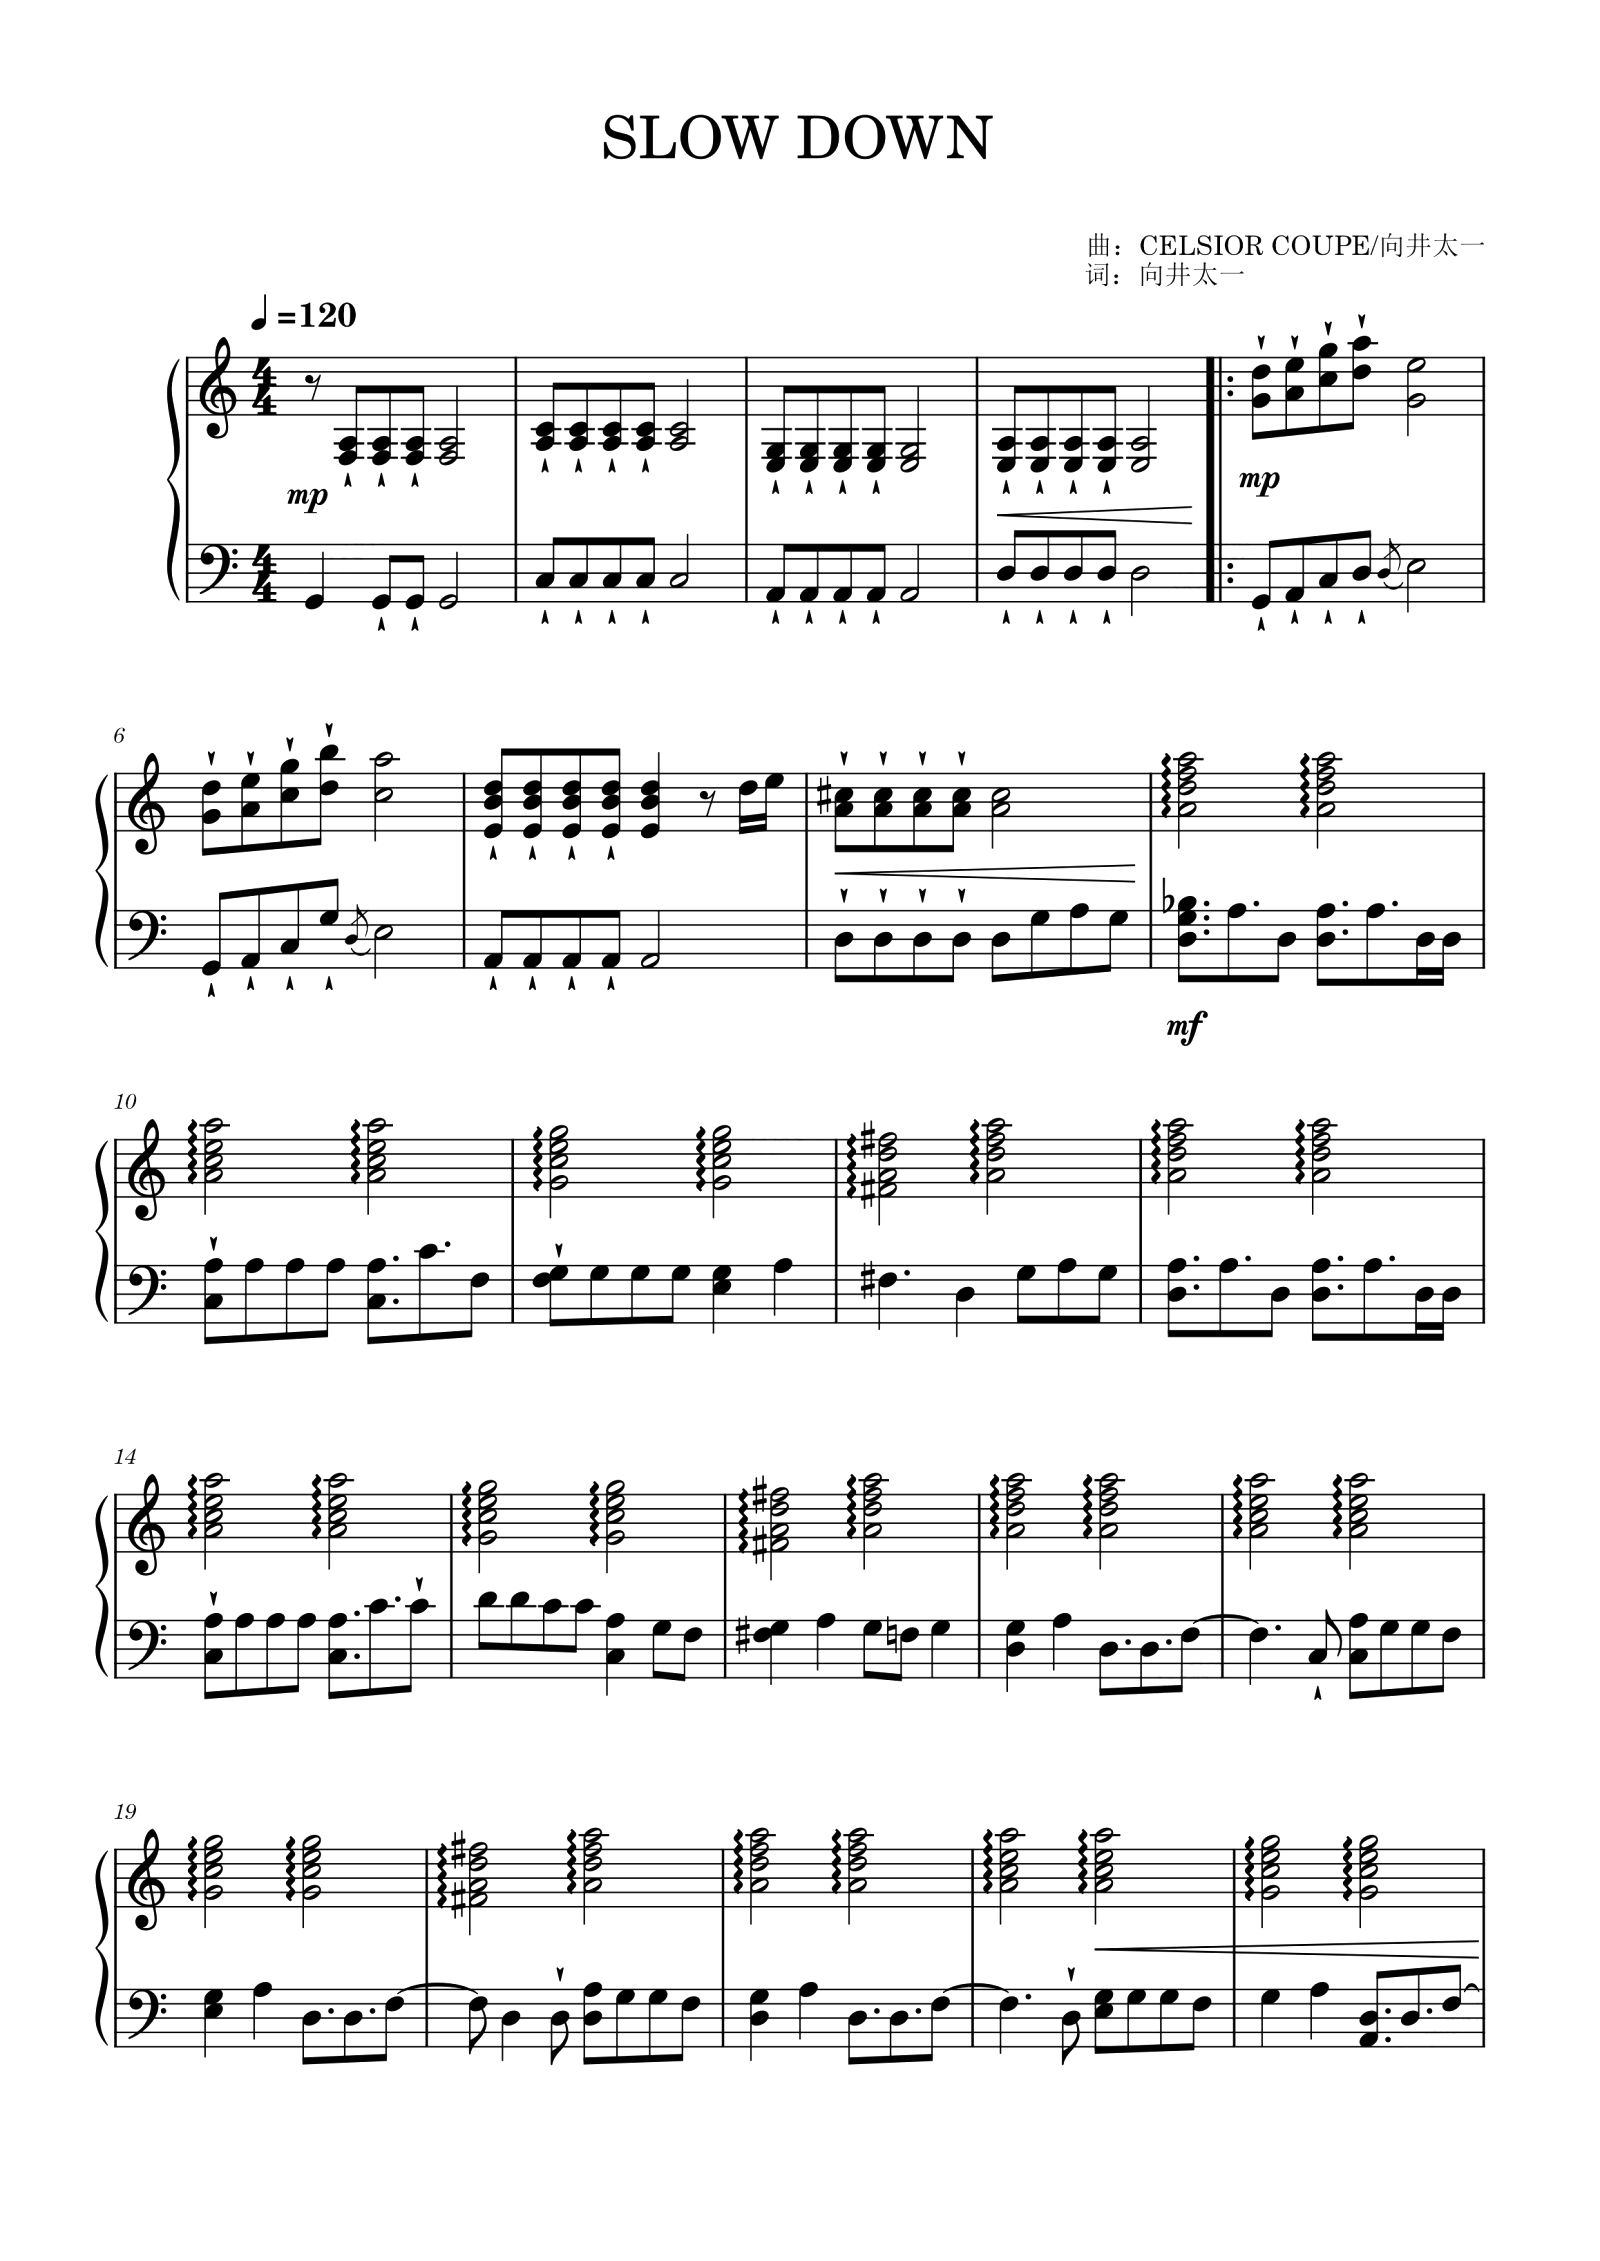 简化版《Slow Down》钢琴谱 - 初学者最易上手 - Madnap带指法钢琴谱子 - 钢琴简谱